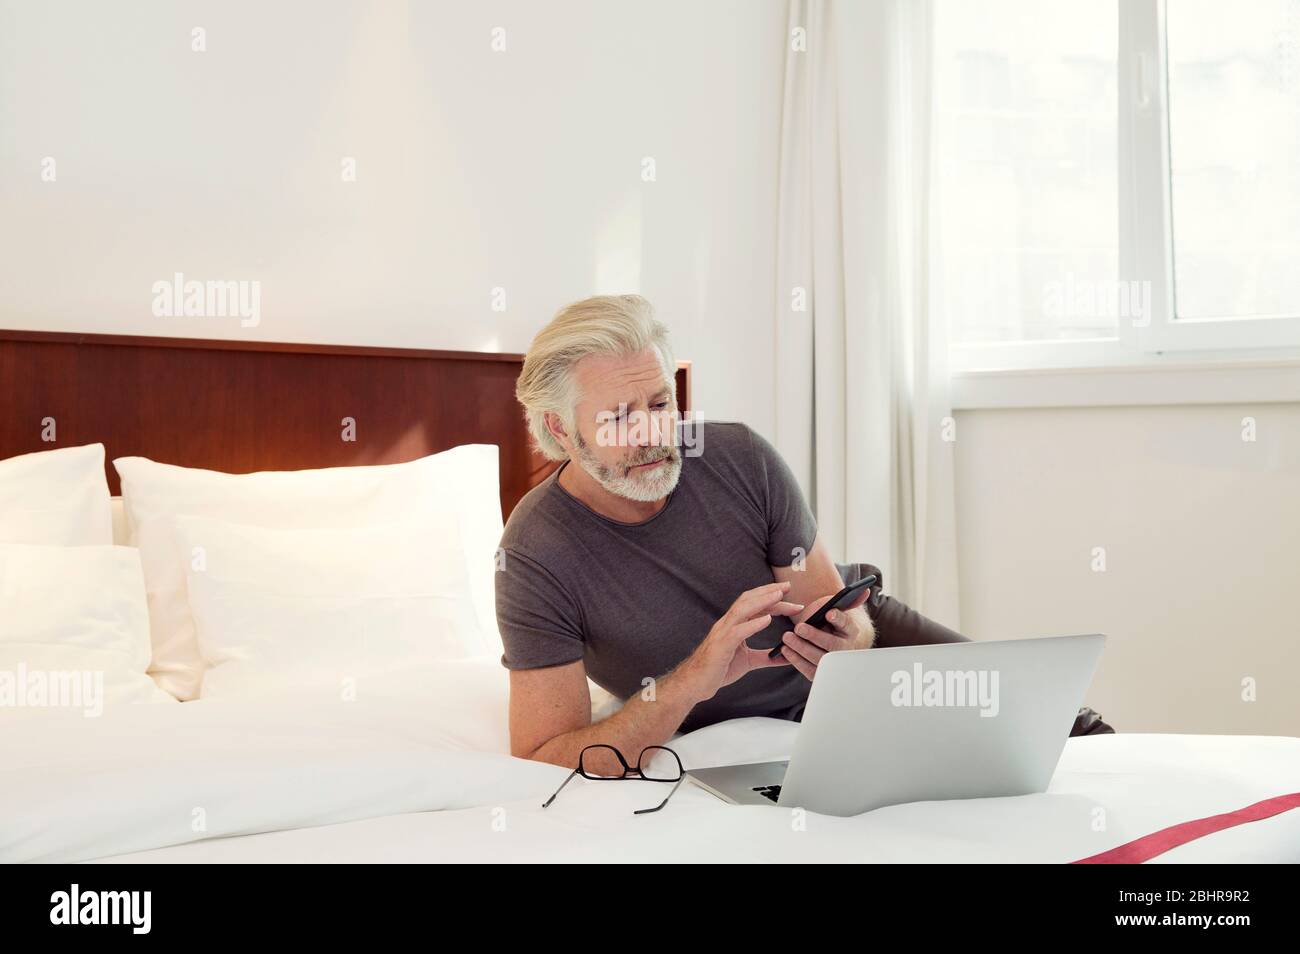 Un homme allongé sur un lit regardant son ordinateur portable et son téléphone portable. Banque D'Images